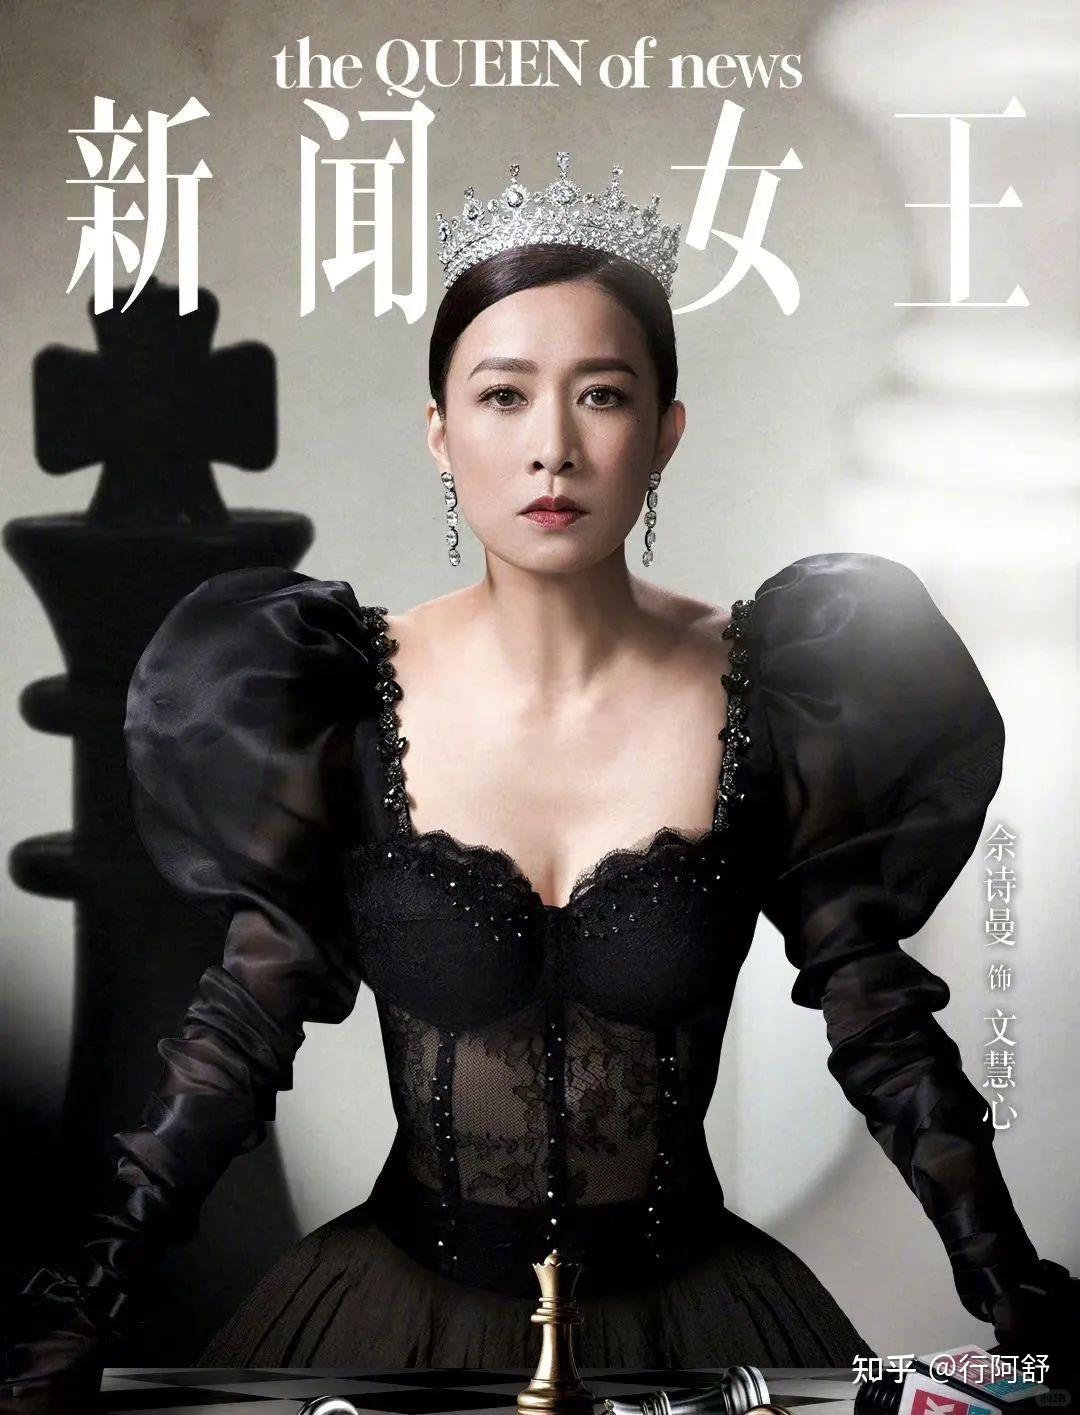 金秀贤、金智媛将出演朴智恩编剧新作《眼泪的女王》，二人剧中扮演夫妻 - 中华娱乐网